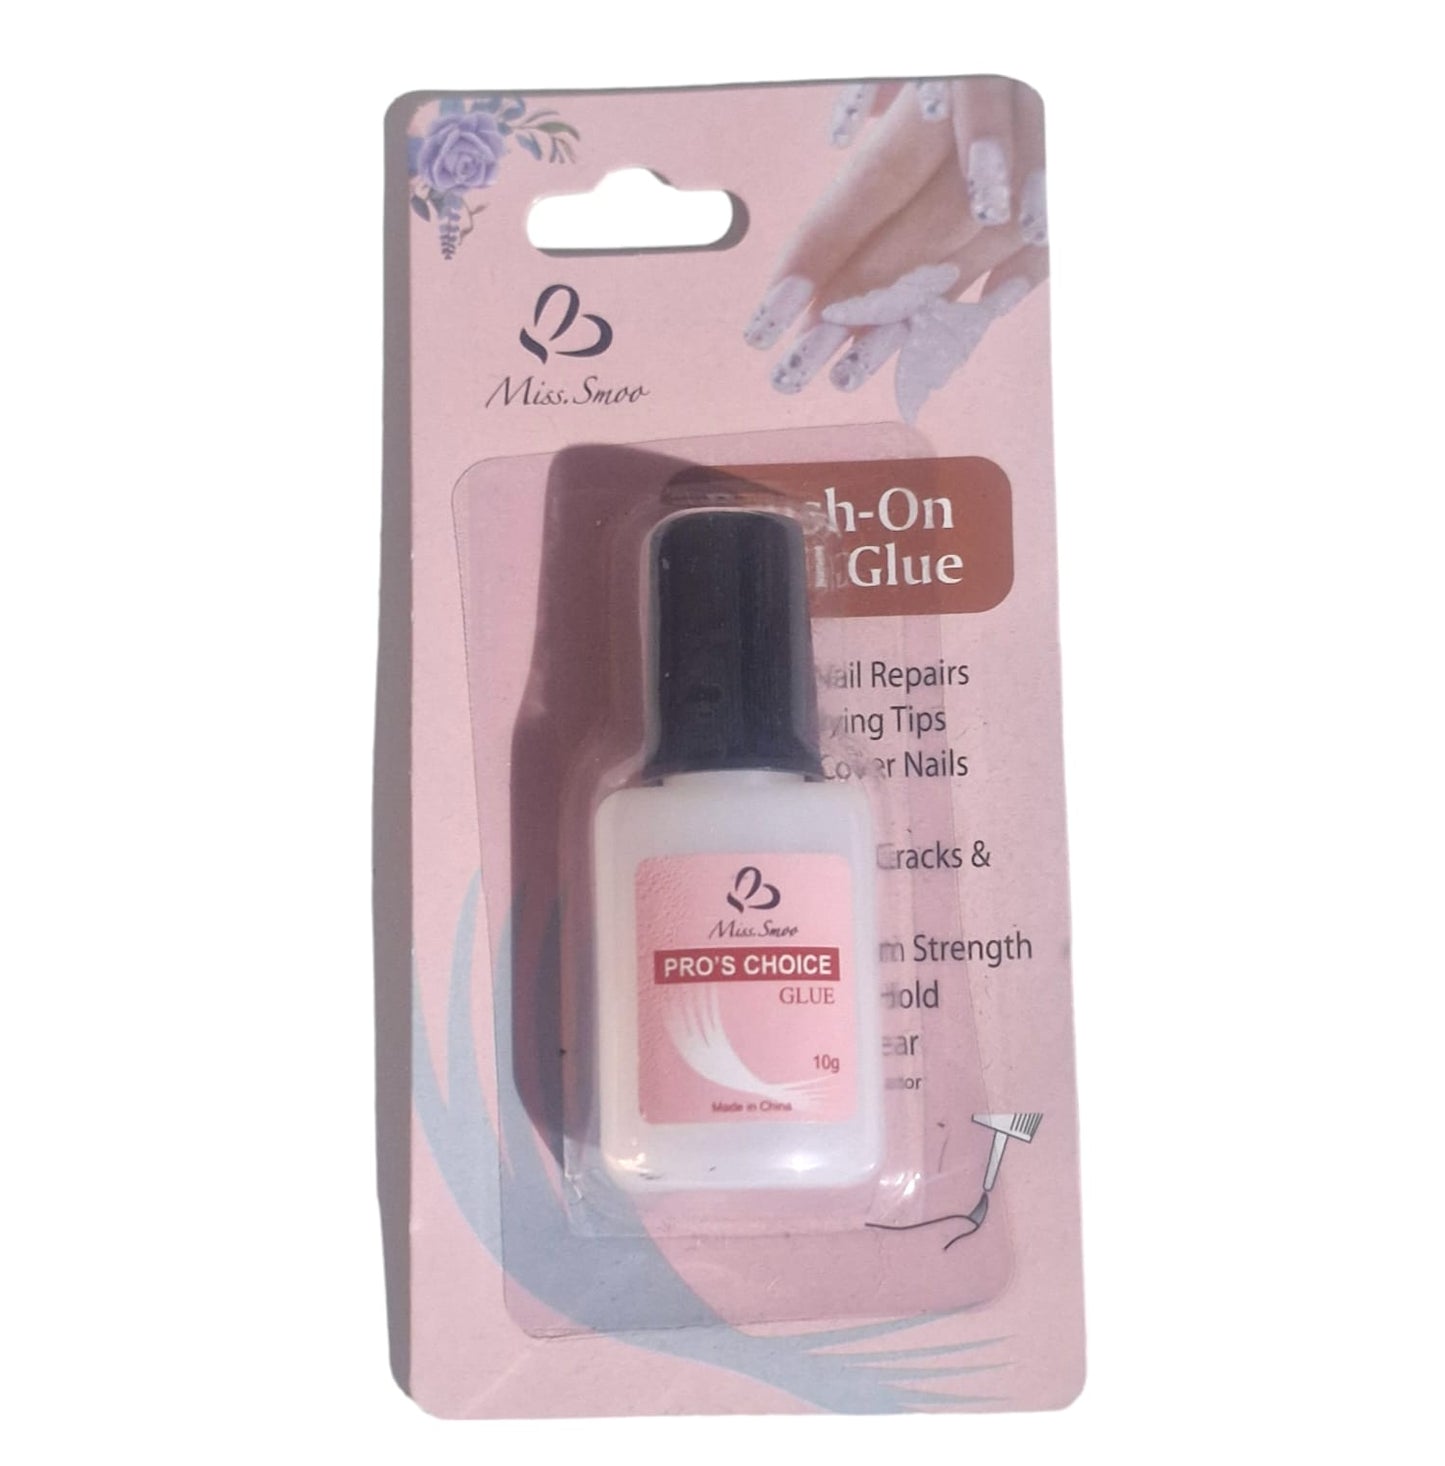 Pro's Choice Nail Glue 10g/ml